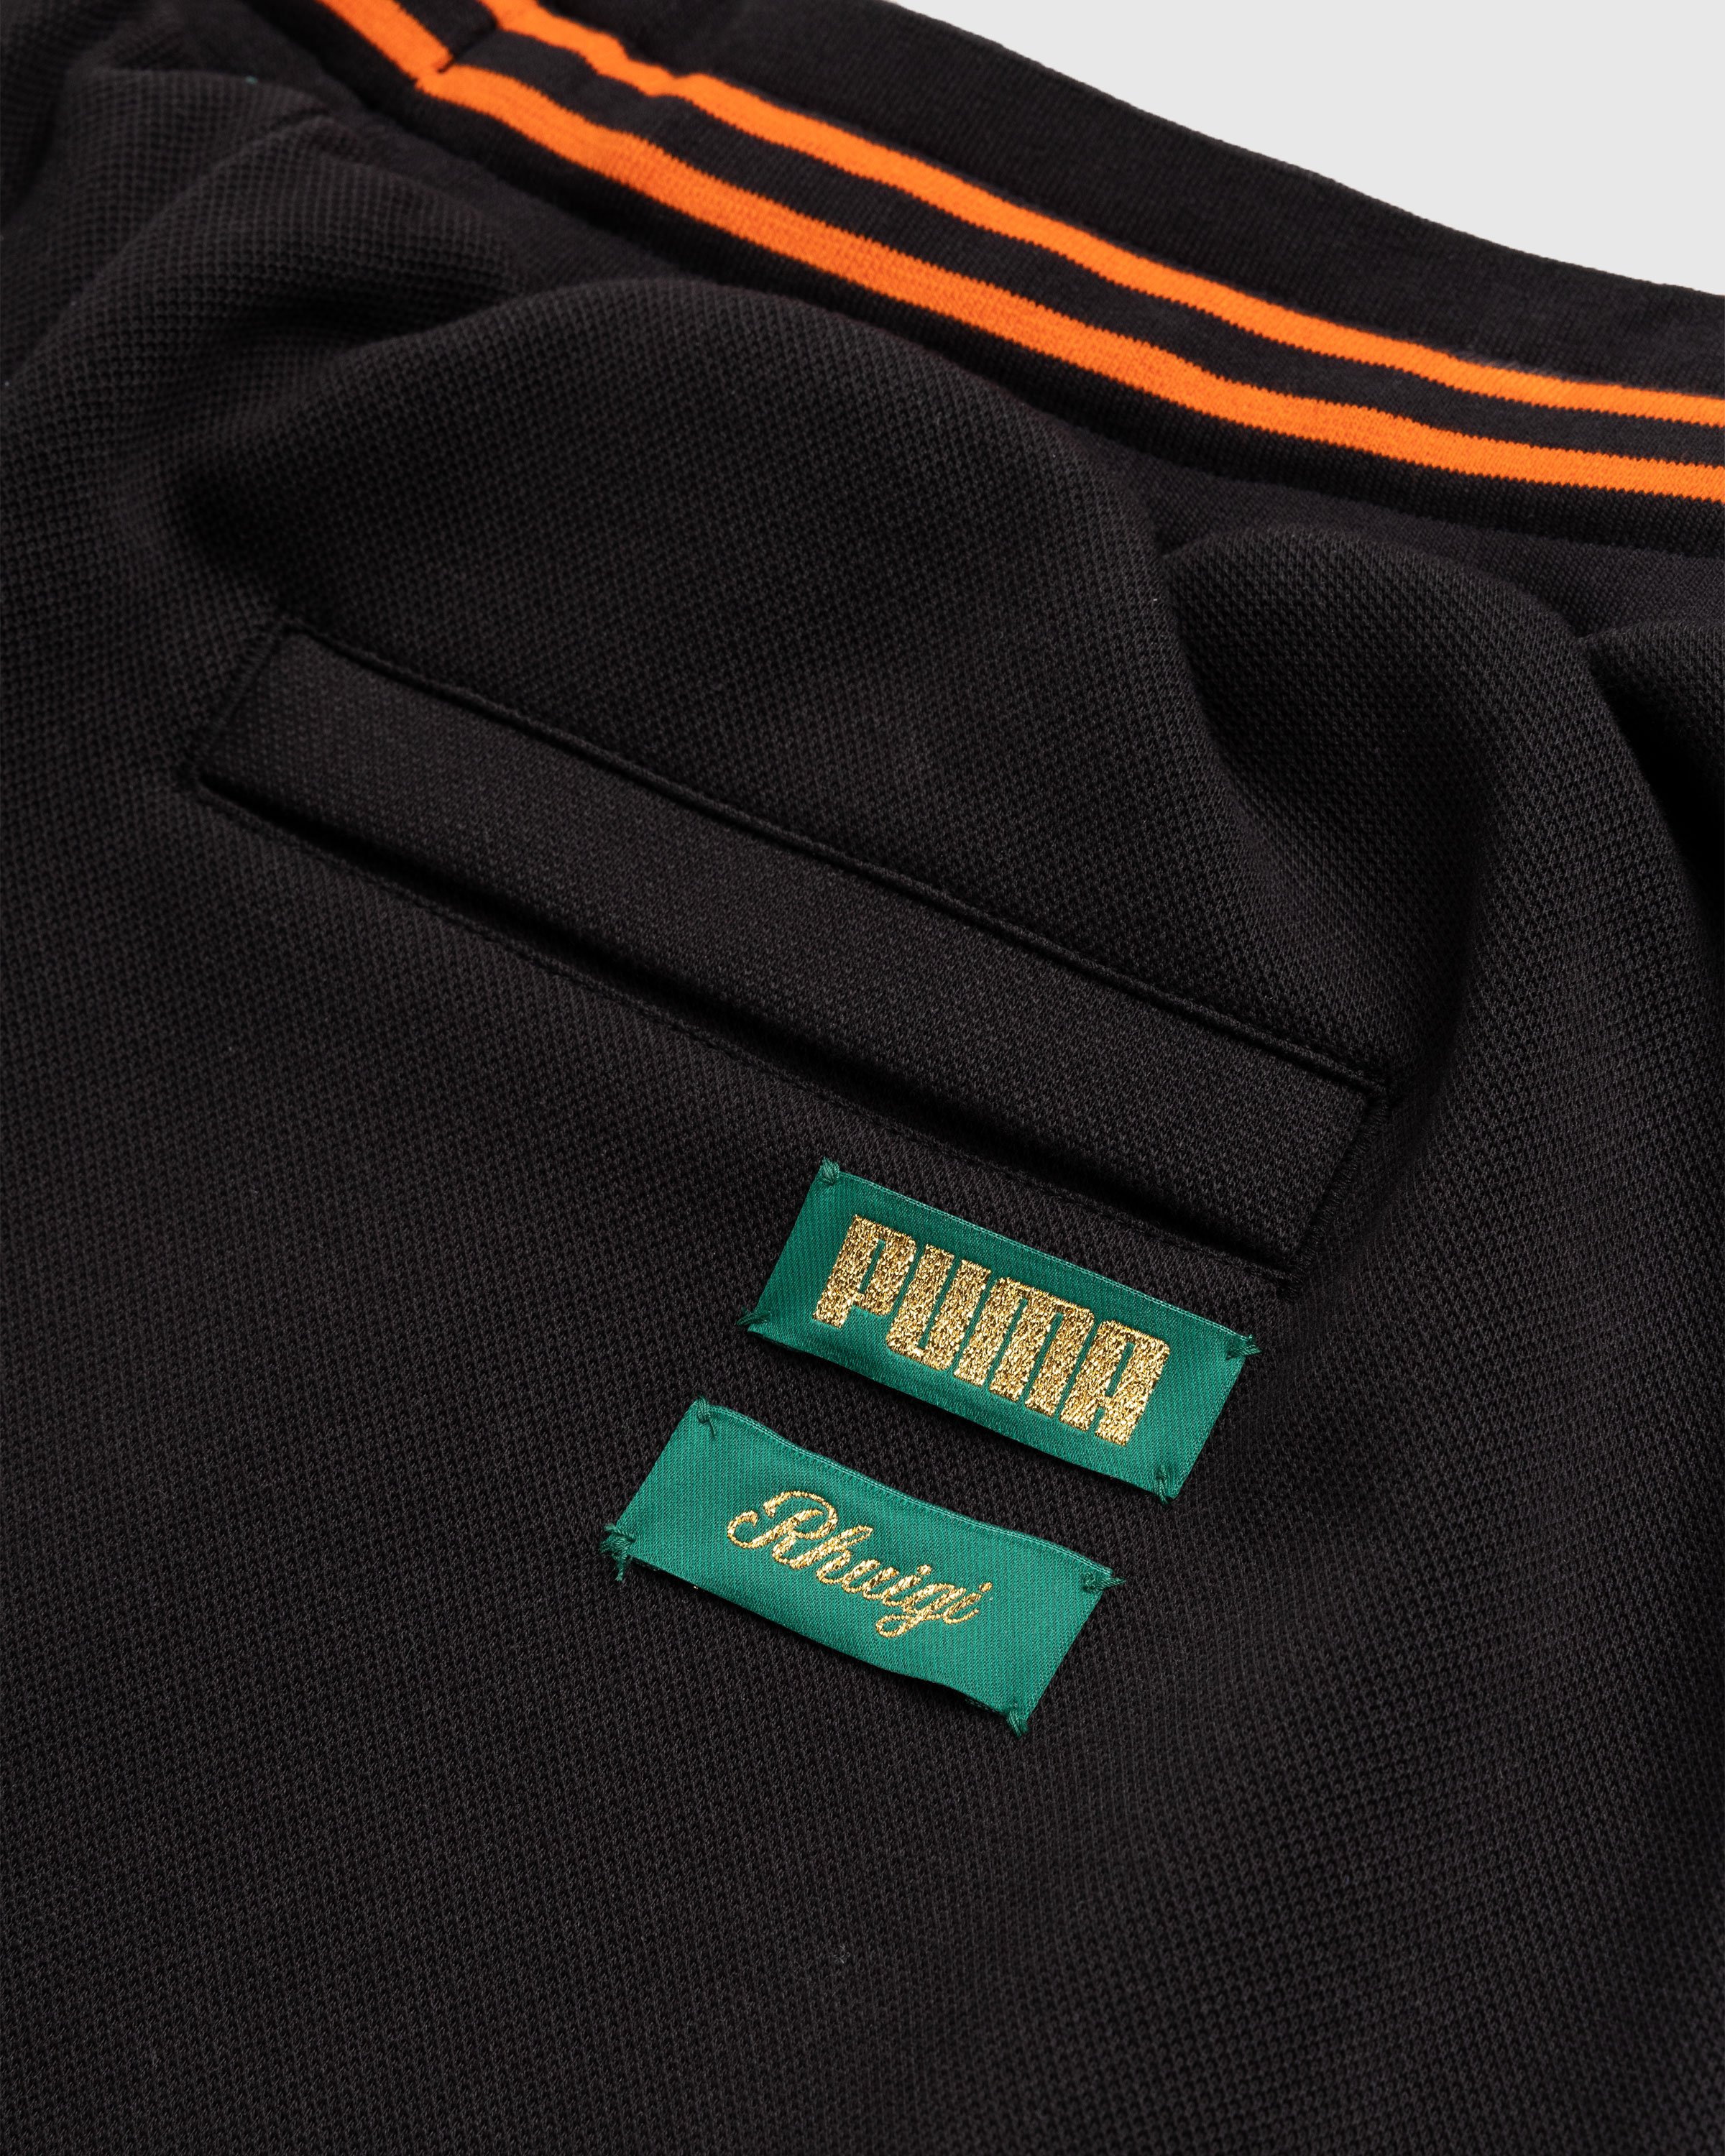 Puma x Rhuigi - Basketball Shorts Black - Clothing - Black - Image 5